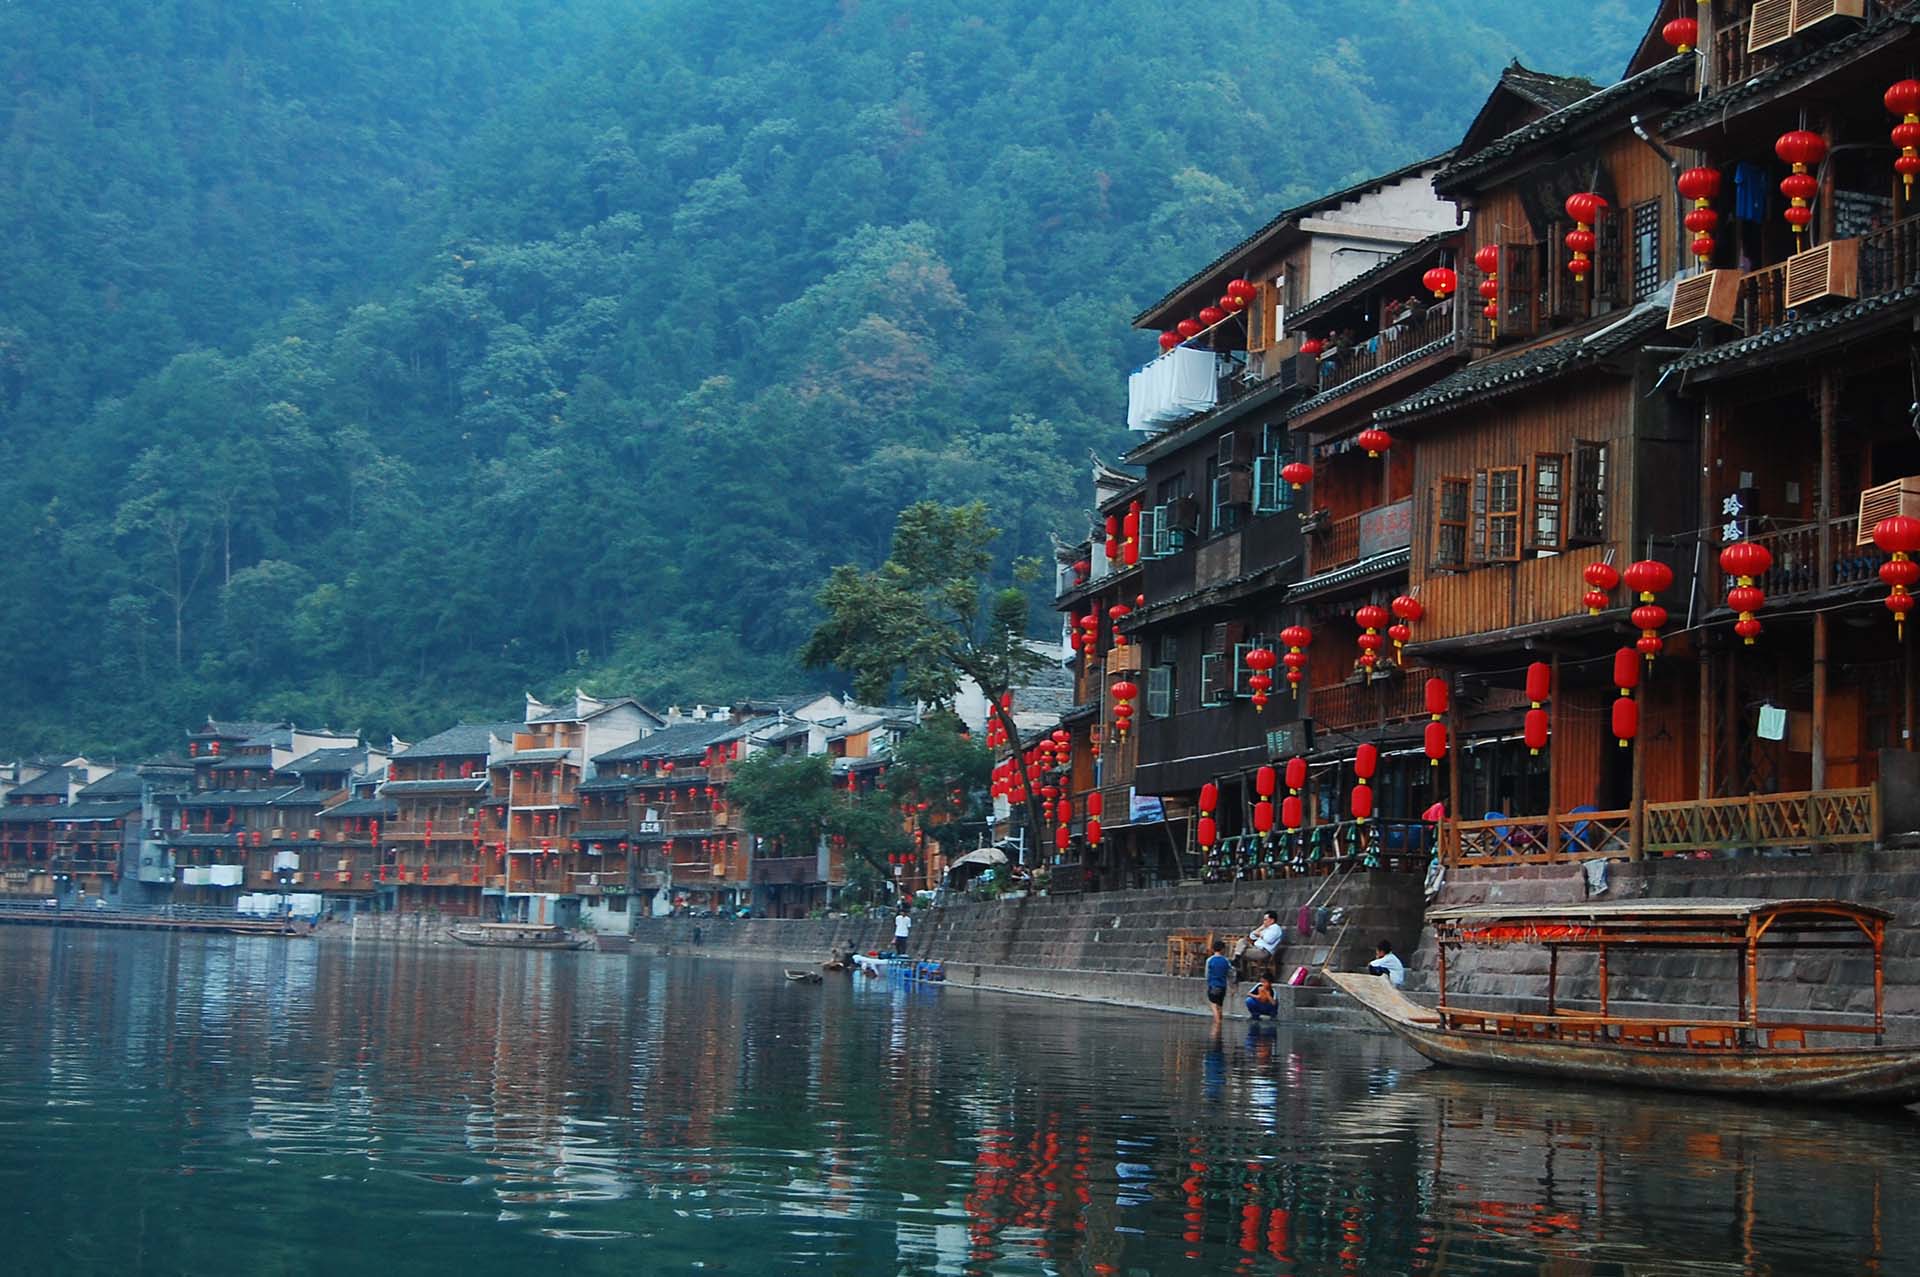 Du lịch Trung Quốc - Cần mang theo những gì để có một chuyến đi thuận lợi?  | Wecheckin